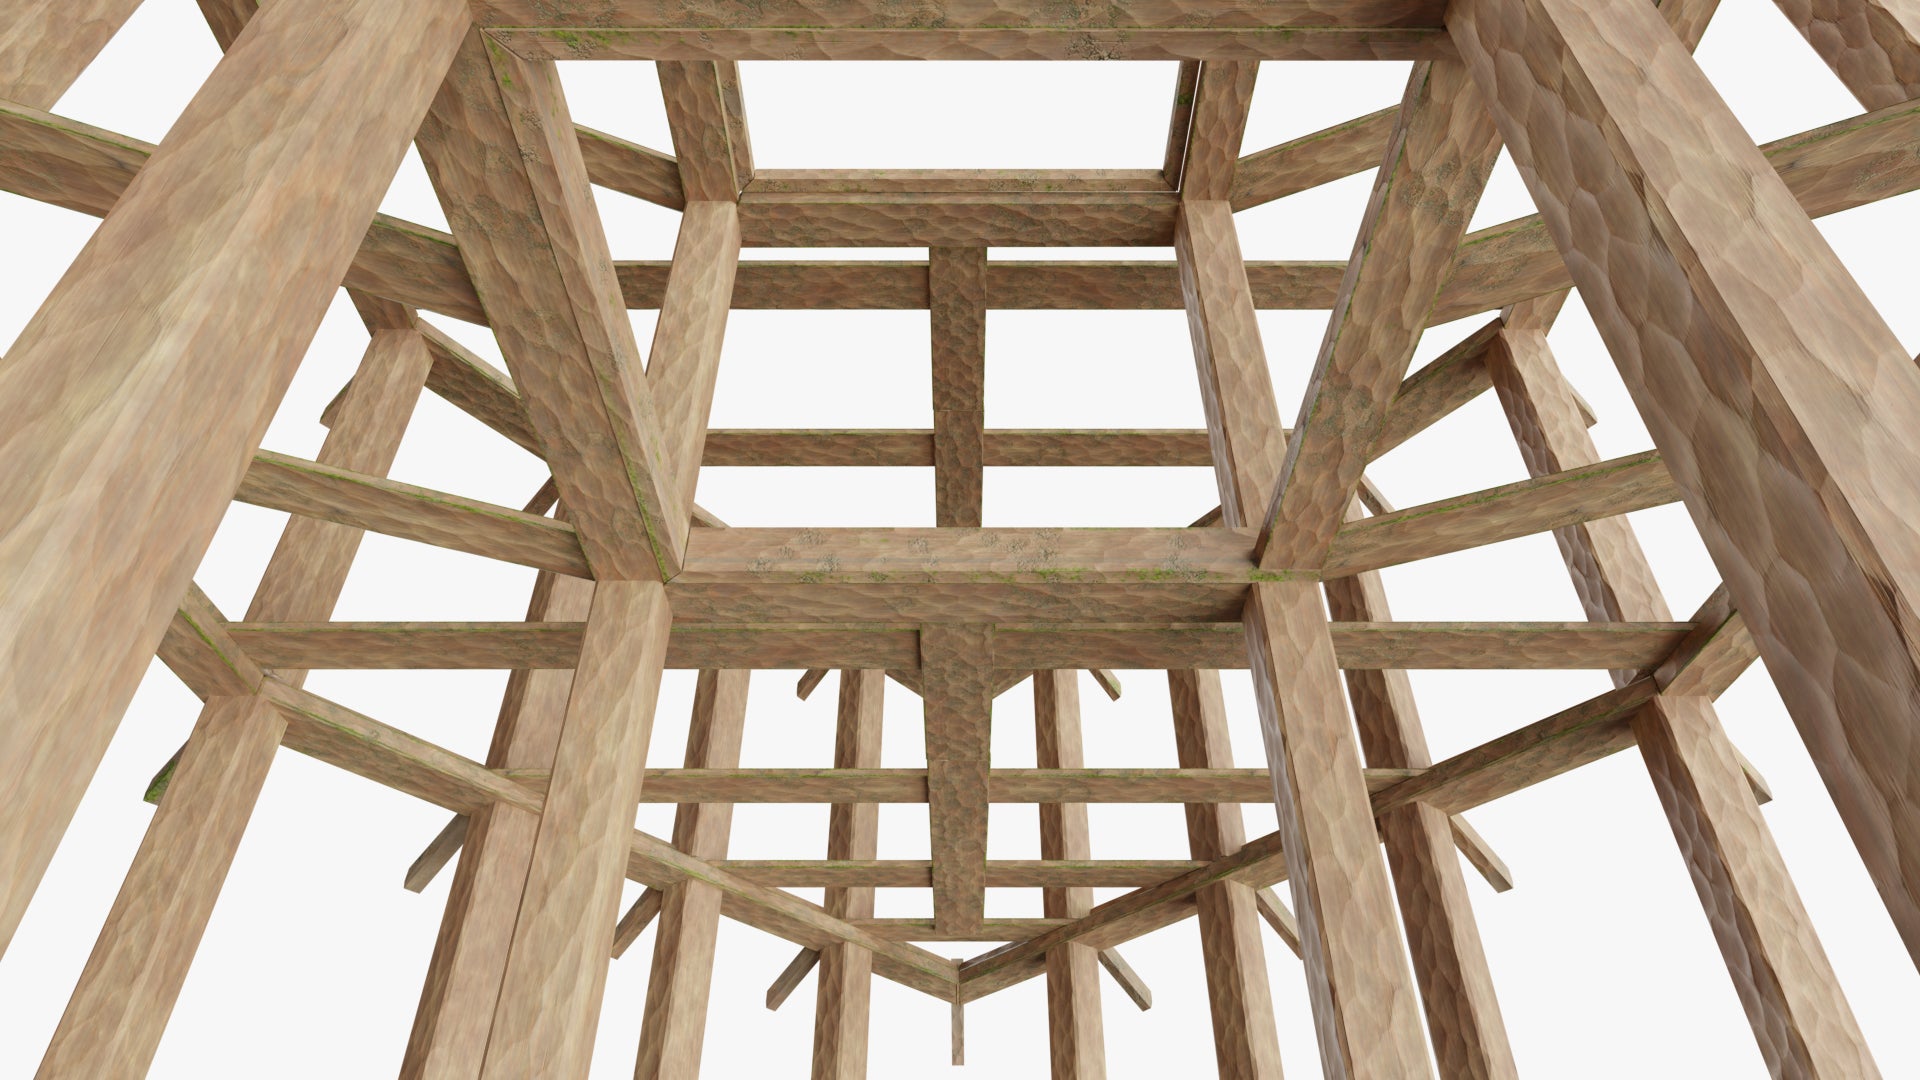 medieval wooden house structure 3d model obj blender pbr textures